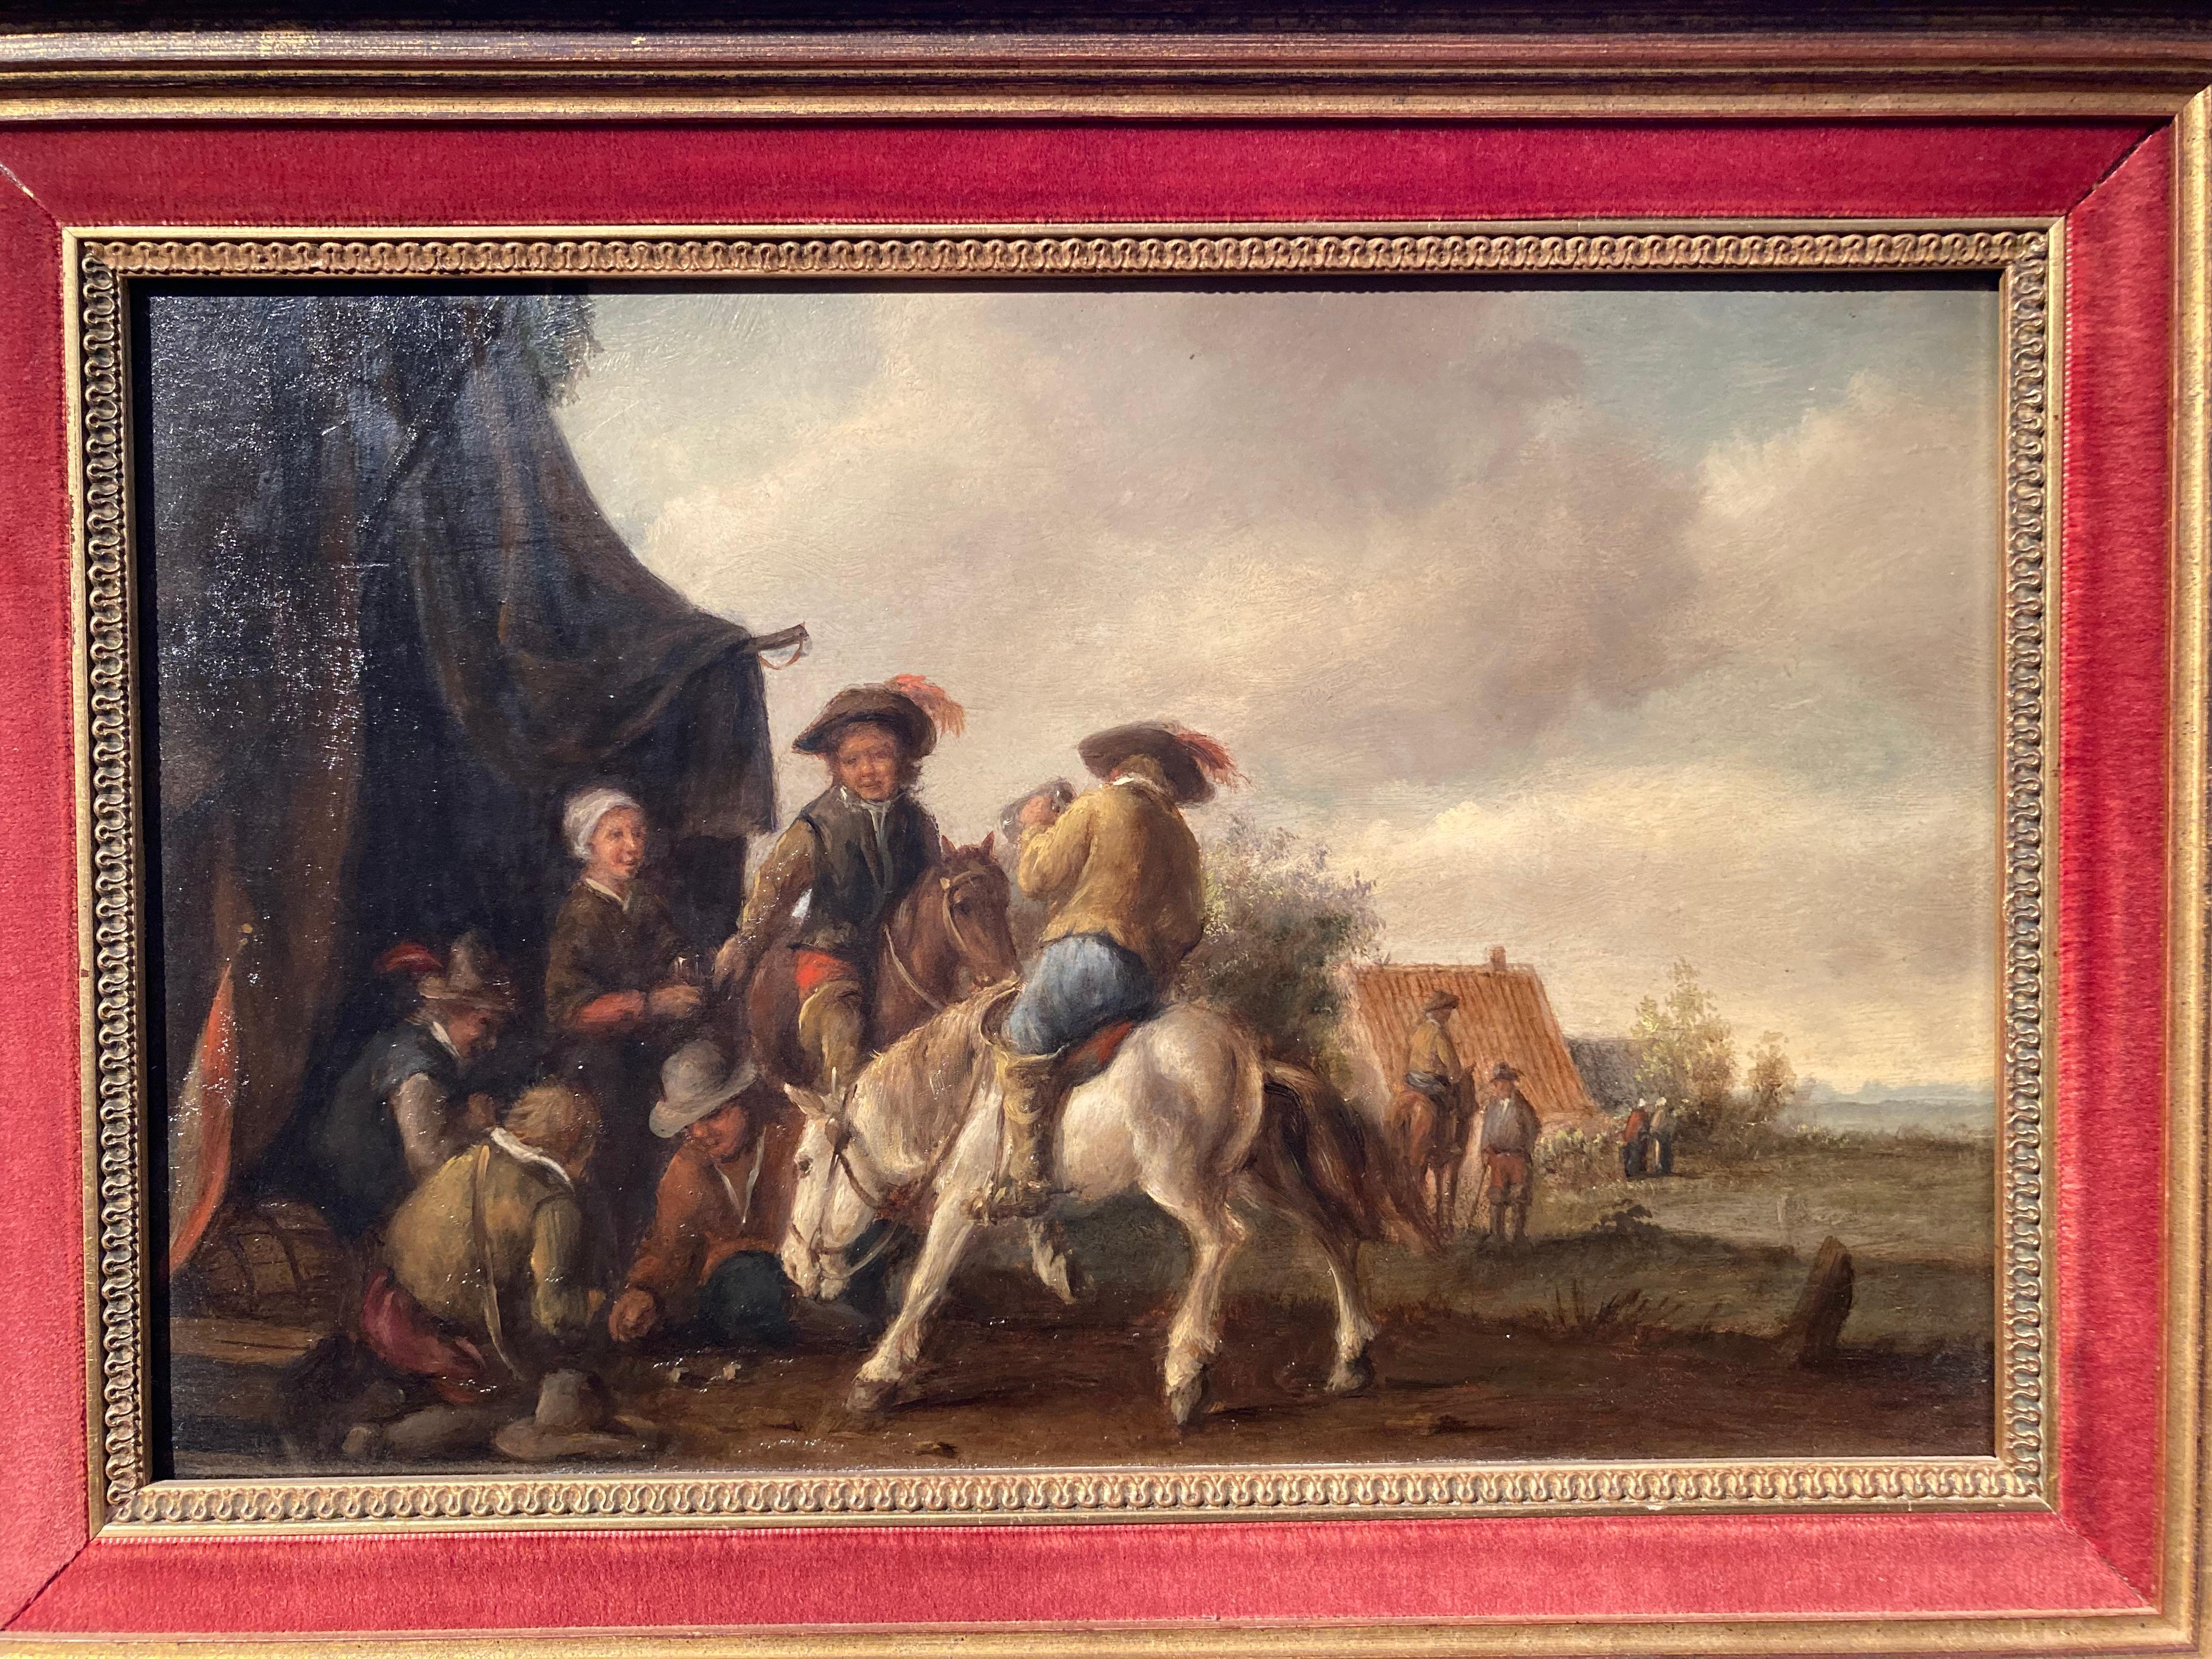 Kreis Wouwerman, Reiter von einem Zelt, Reiter mit Karten, niederländischer alter Meister (Barock), Painting, von Philips Wouwerman